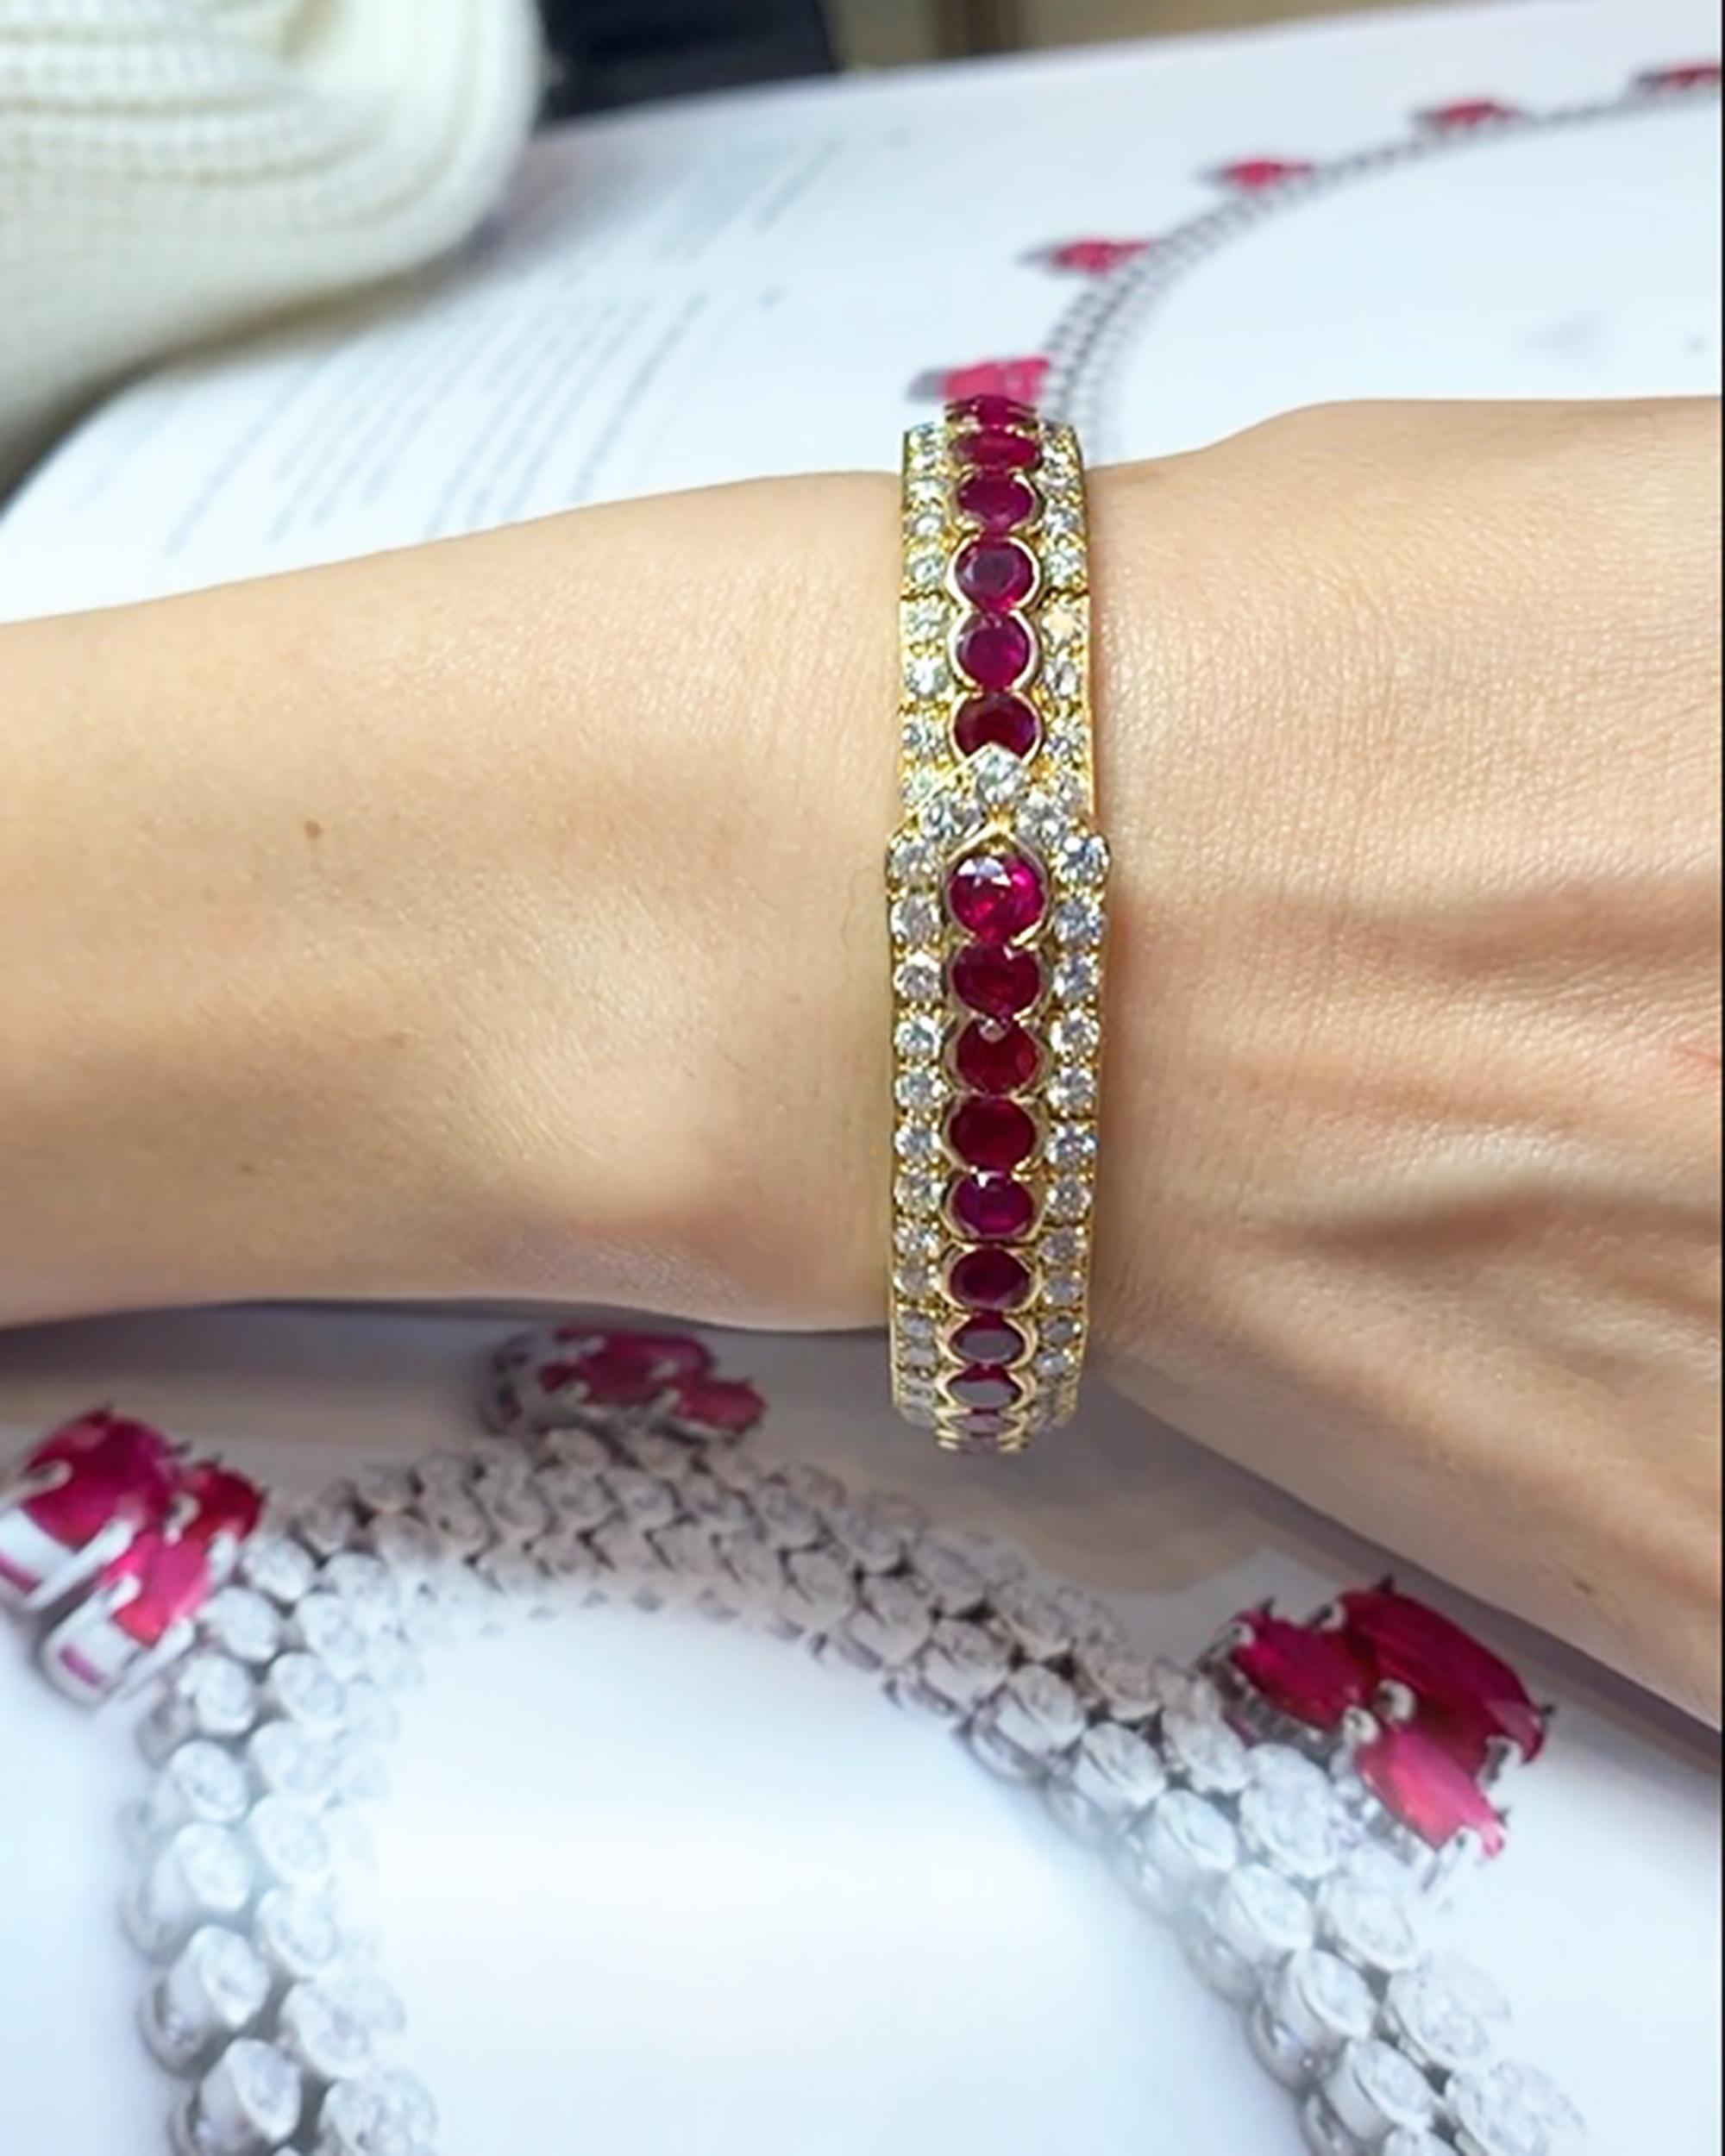 Un magnifique bracelet décoré de rubis et de diamants.
41 rubis ronds et diamants ronds.
Le poids total des diamants est d'environ 6,30 carats. 
Elles sont équivalentes aux couleurs G-H, clarté VS.
Le métal est de l'or jaune 18k et pèse 44 grammes.